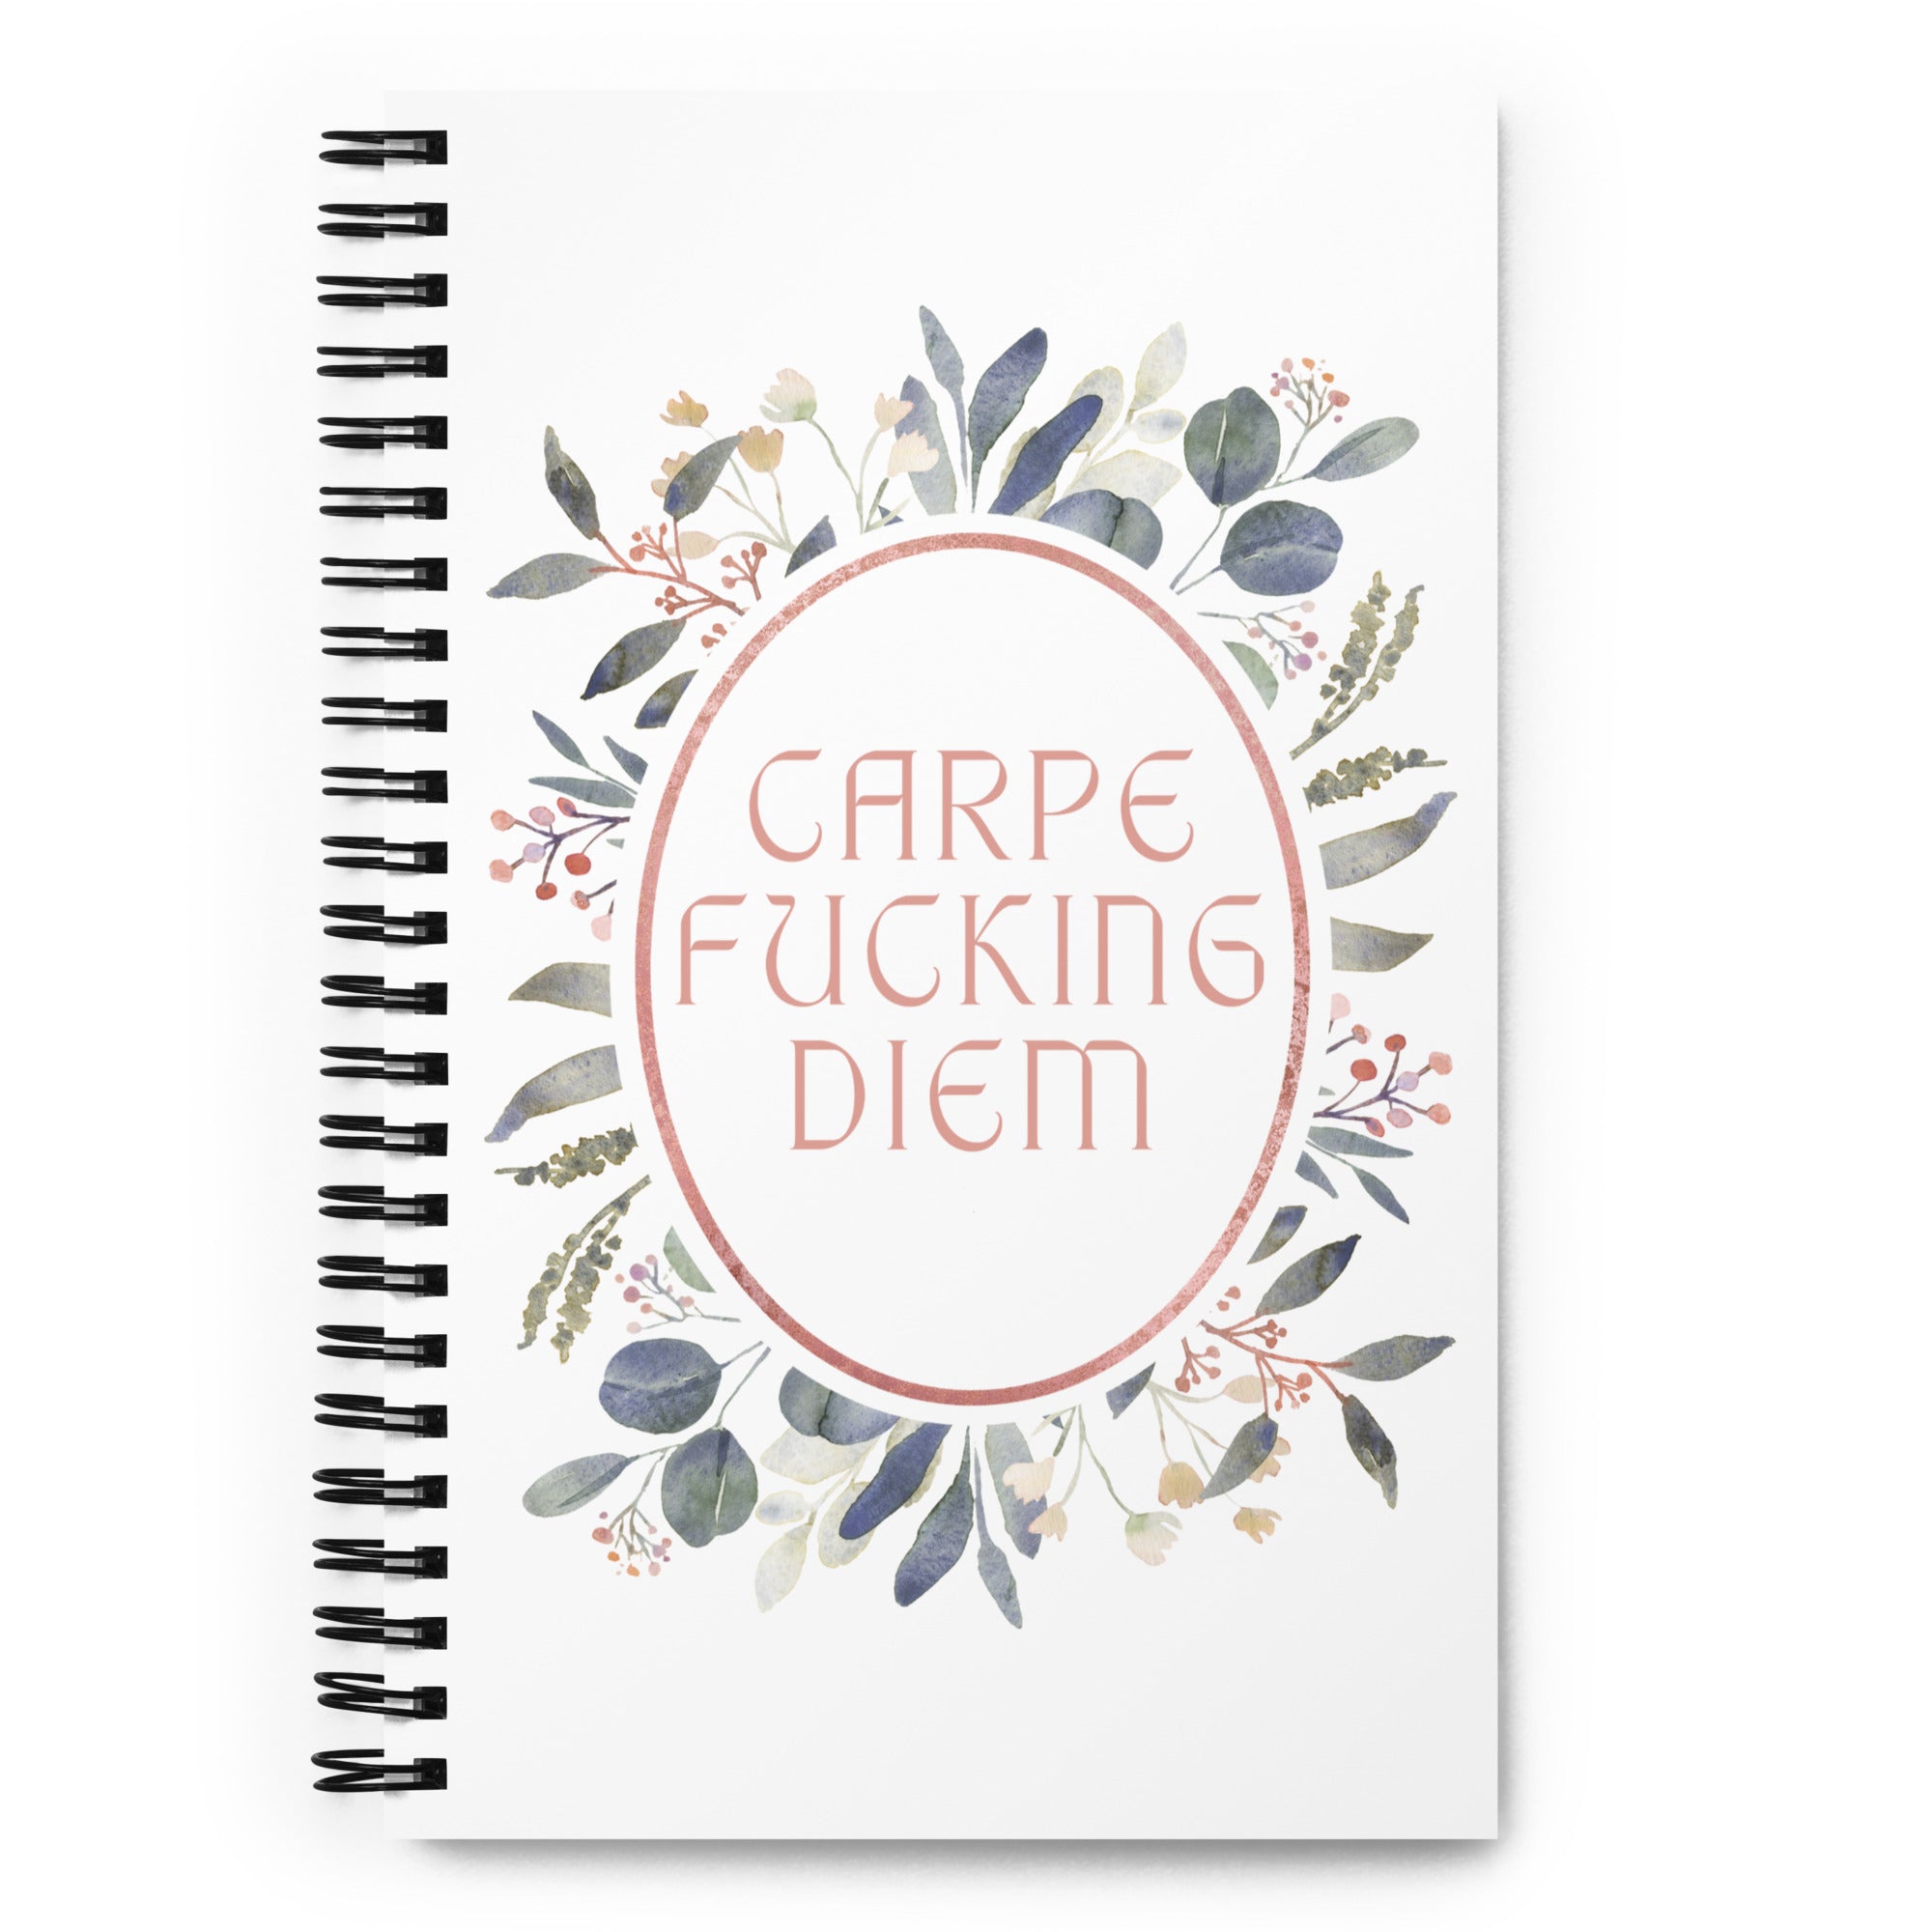 Carpe Fucking Diem - Spiral Notebook